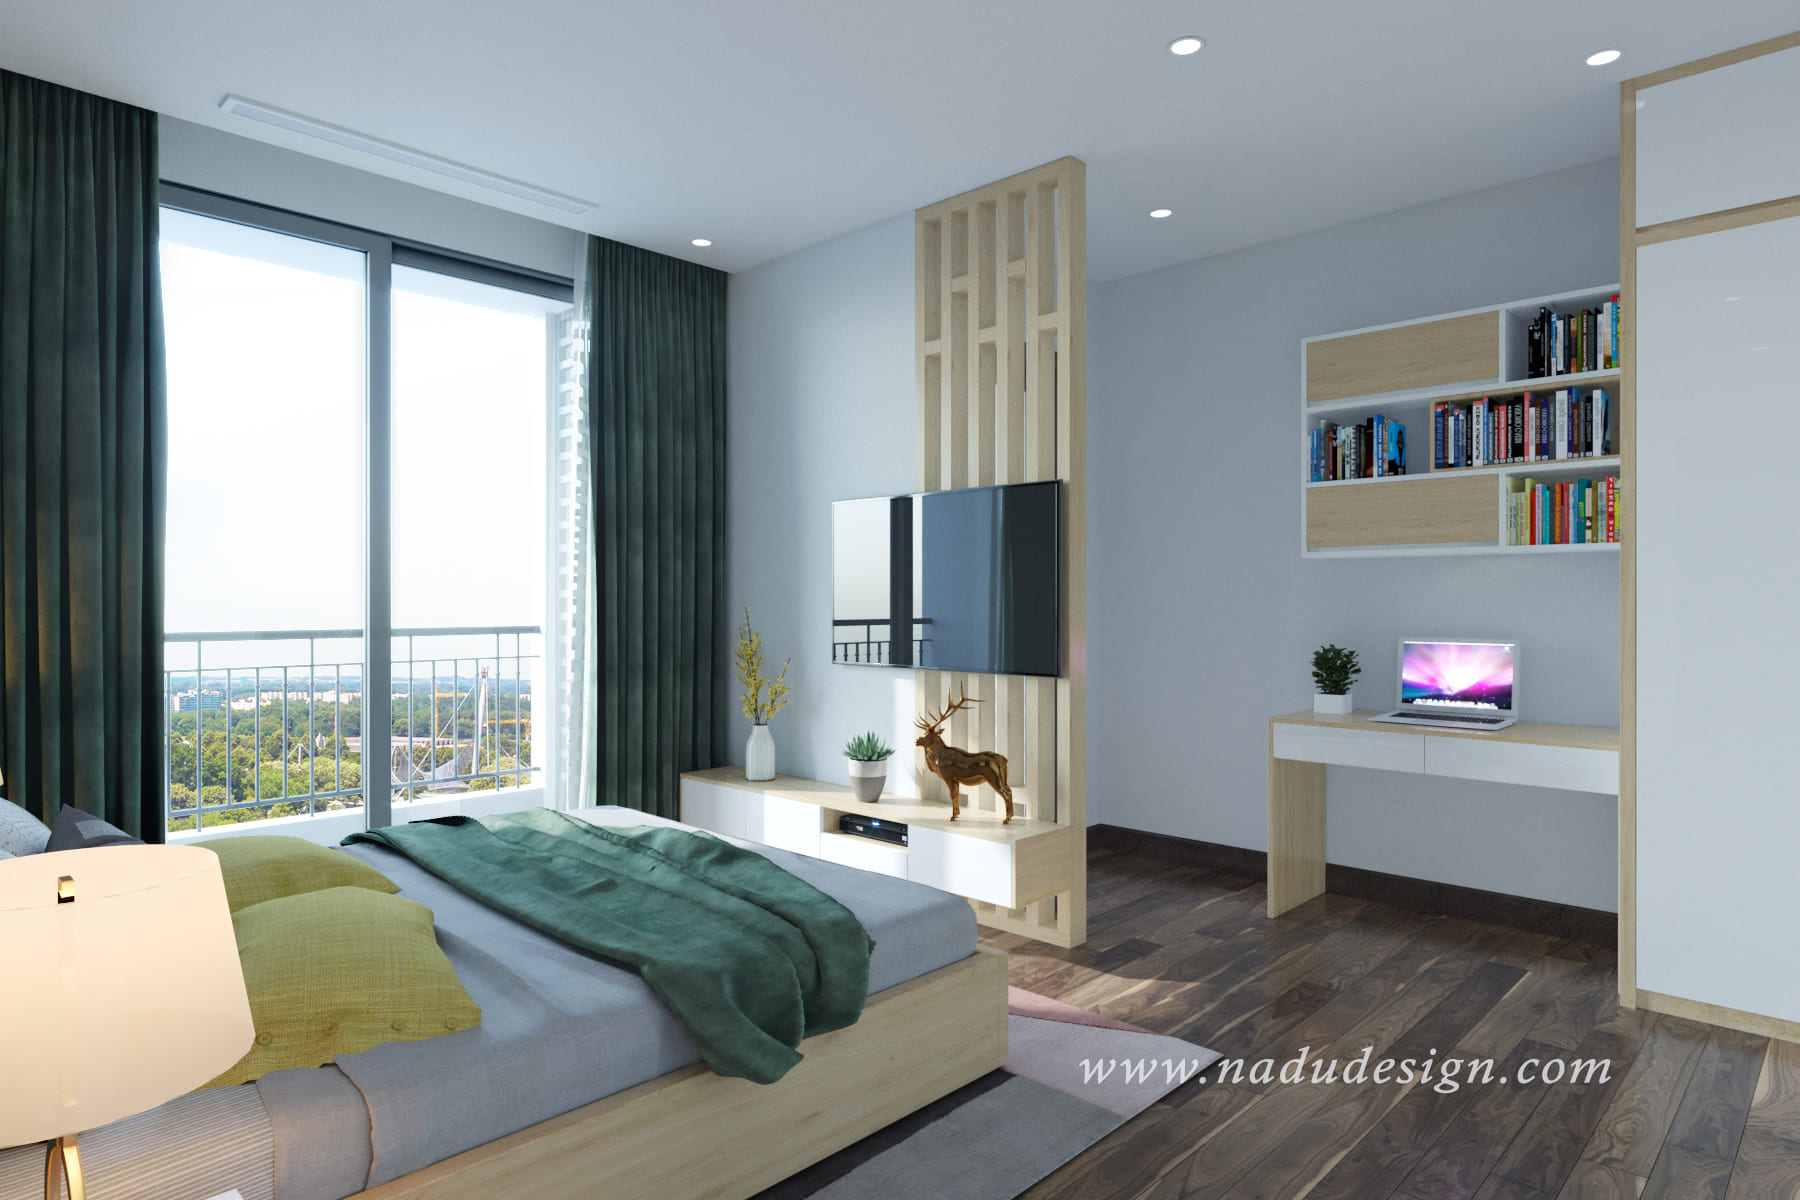 Thiết kế nội thất phòng ngủ master hiện đại